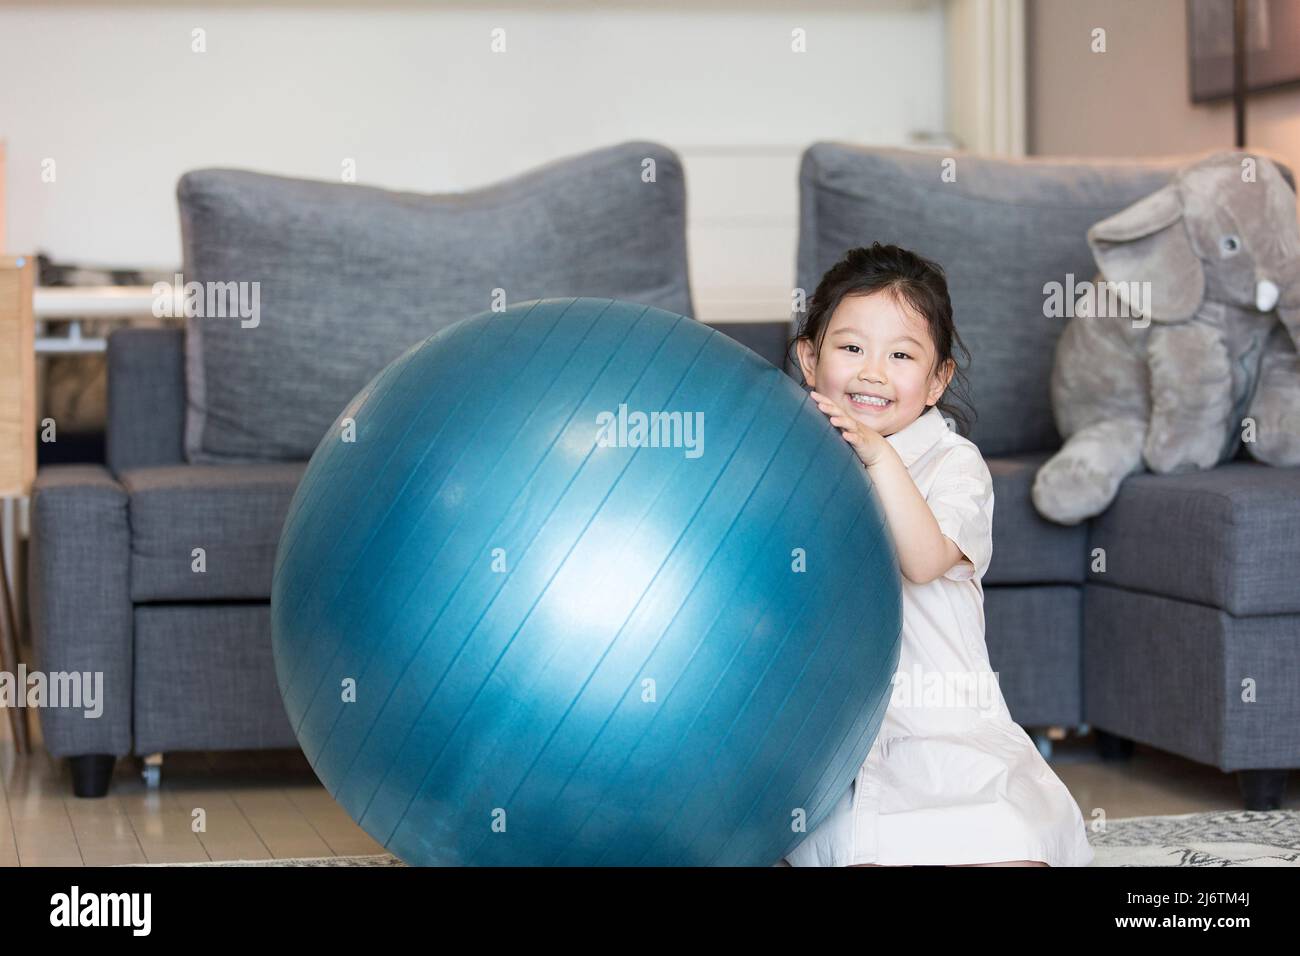 Una piccola ragazza cinese timida che gioca intimamente nel soggiorno della famiglia - foto d'archivio Foto Stock